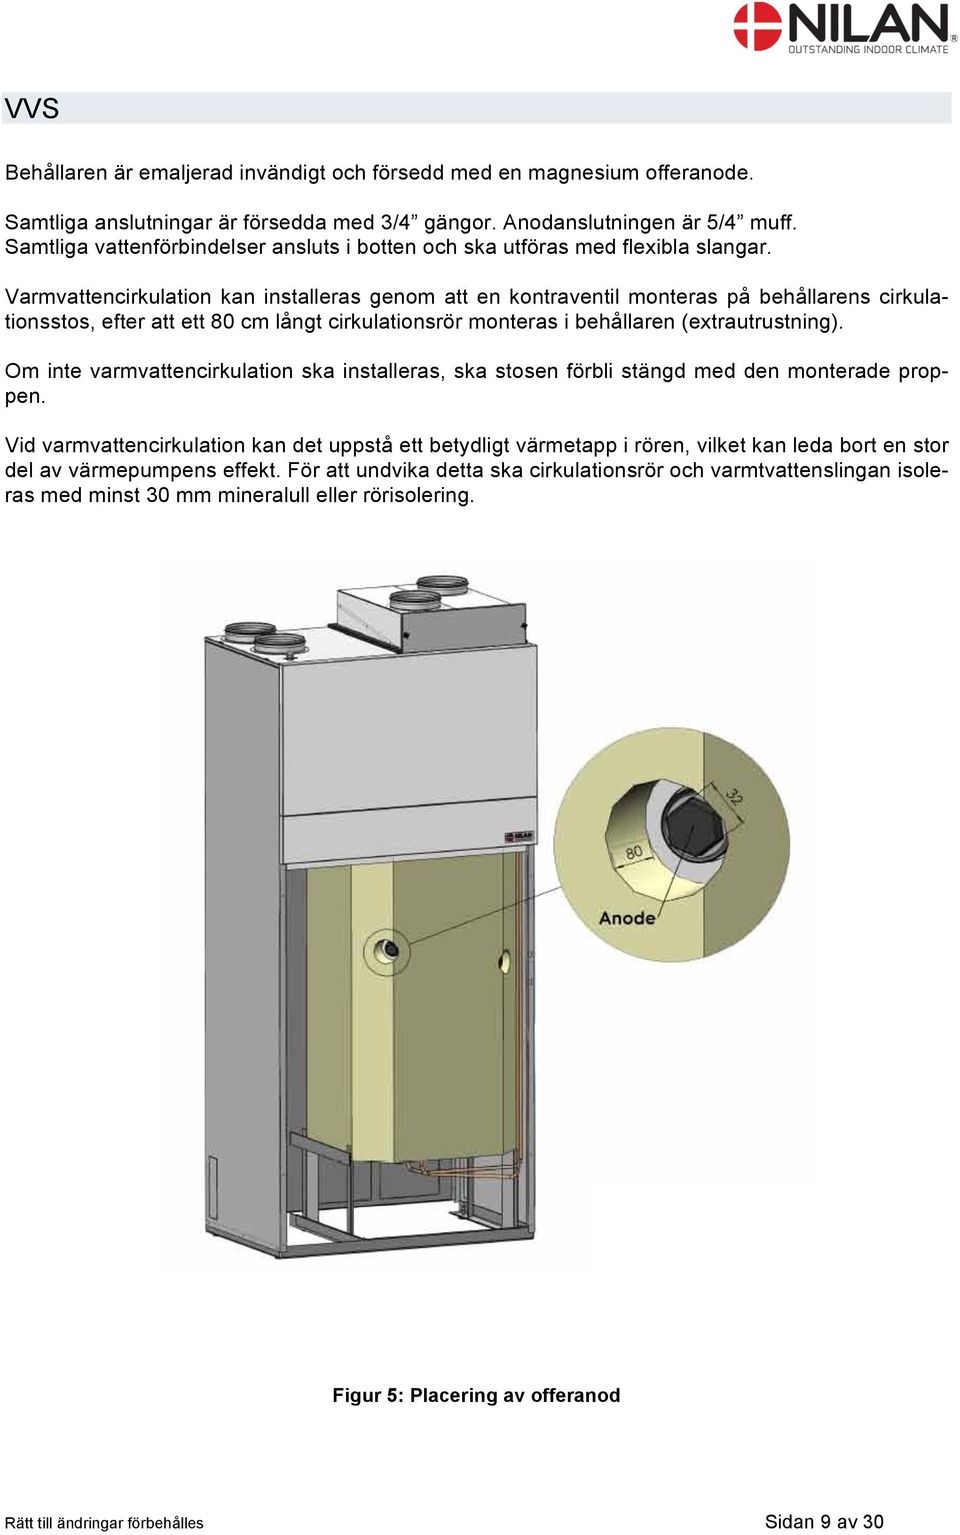 Varmvattencirkulation kan installeras genom att en kontraventil monteras på behållarens cirkulationsstos, efter att ett 80 cm långt cirkulationsrör monteras i behållaren (extrautrustning).